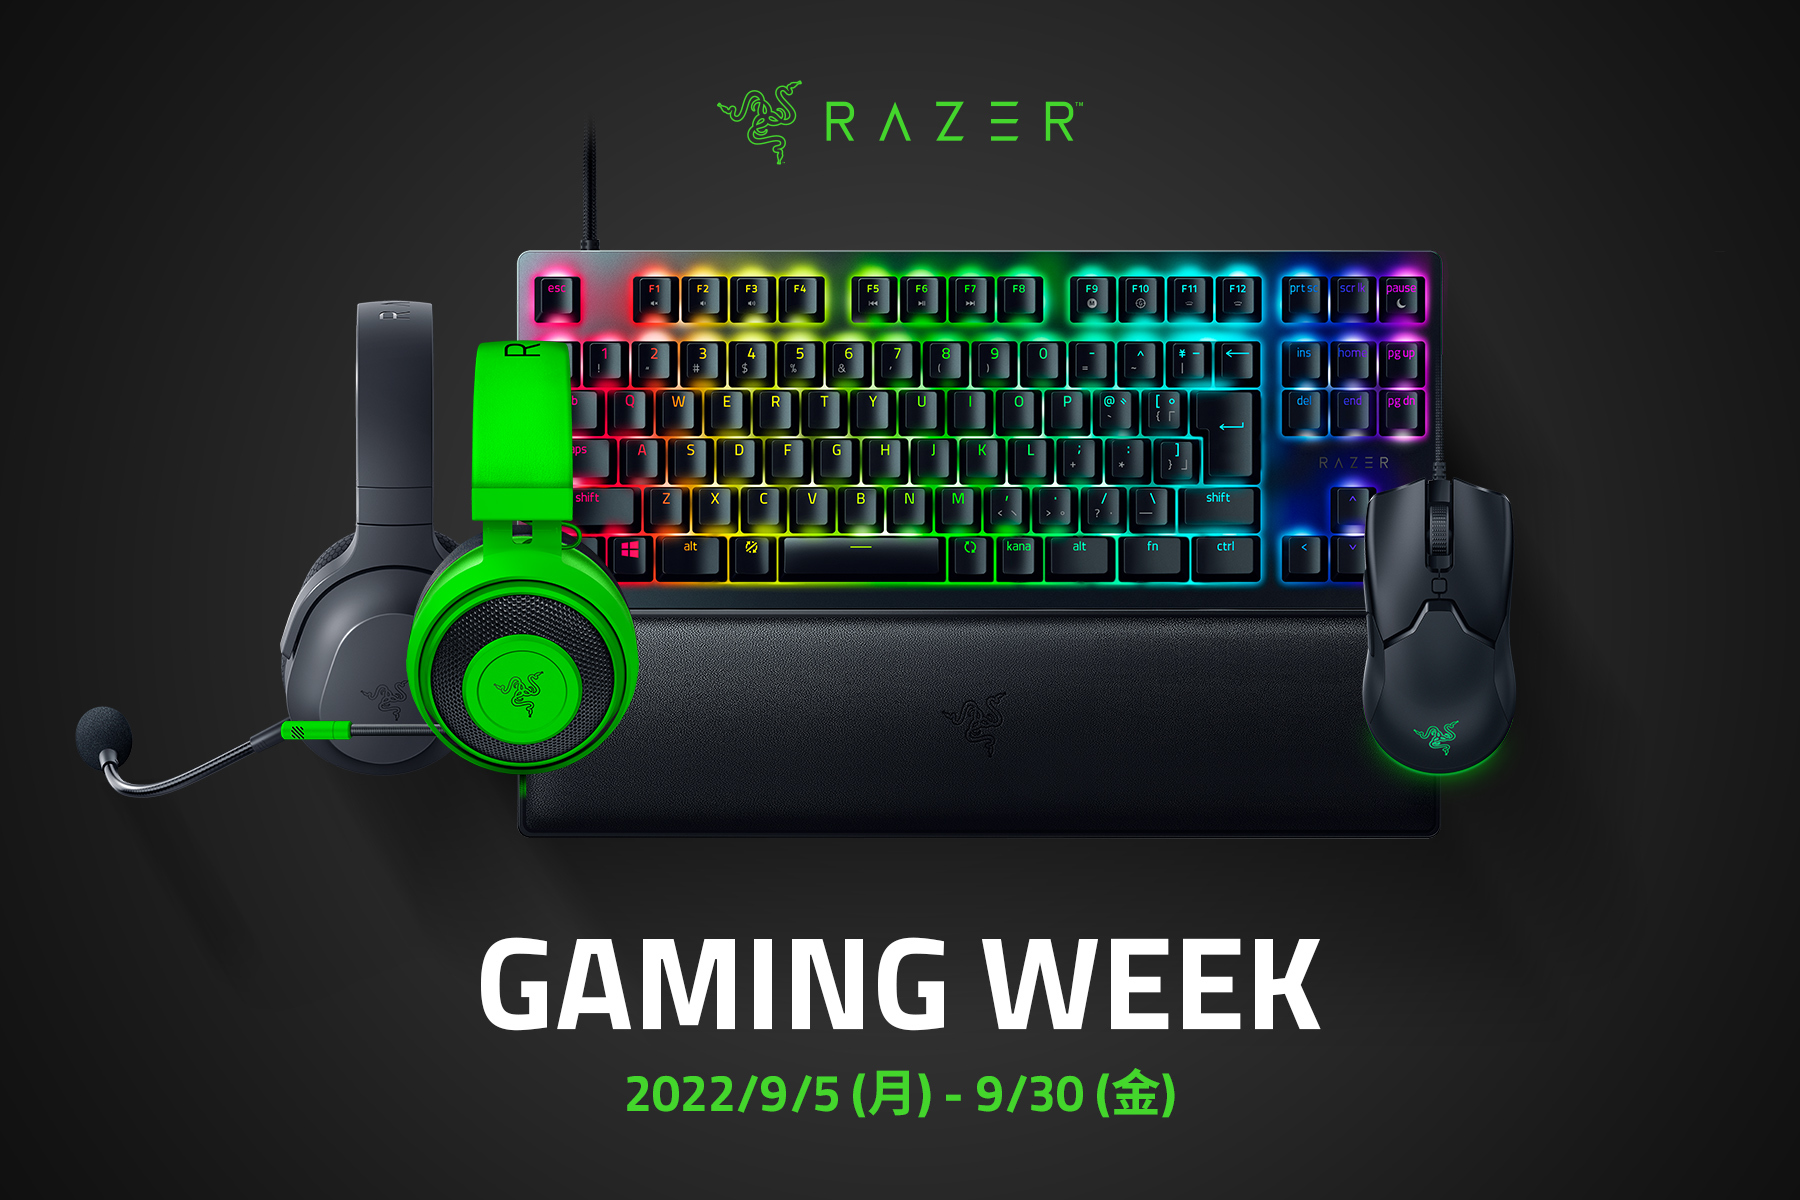 全てのゲーマーのプレイ環境をレベルアップする
「Razer Gaming Week」を9月5日(月)より開催！